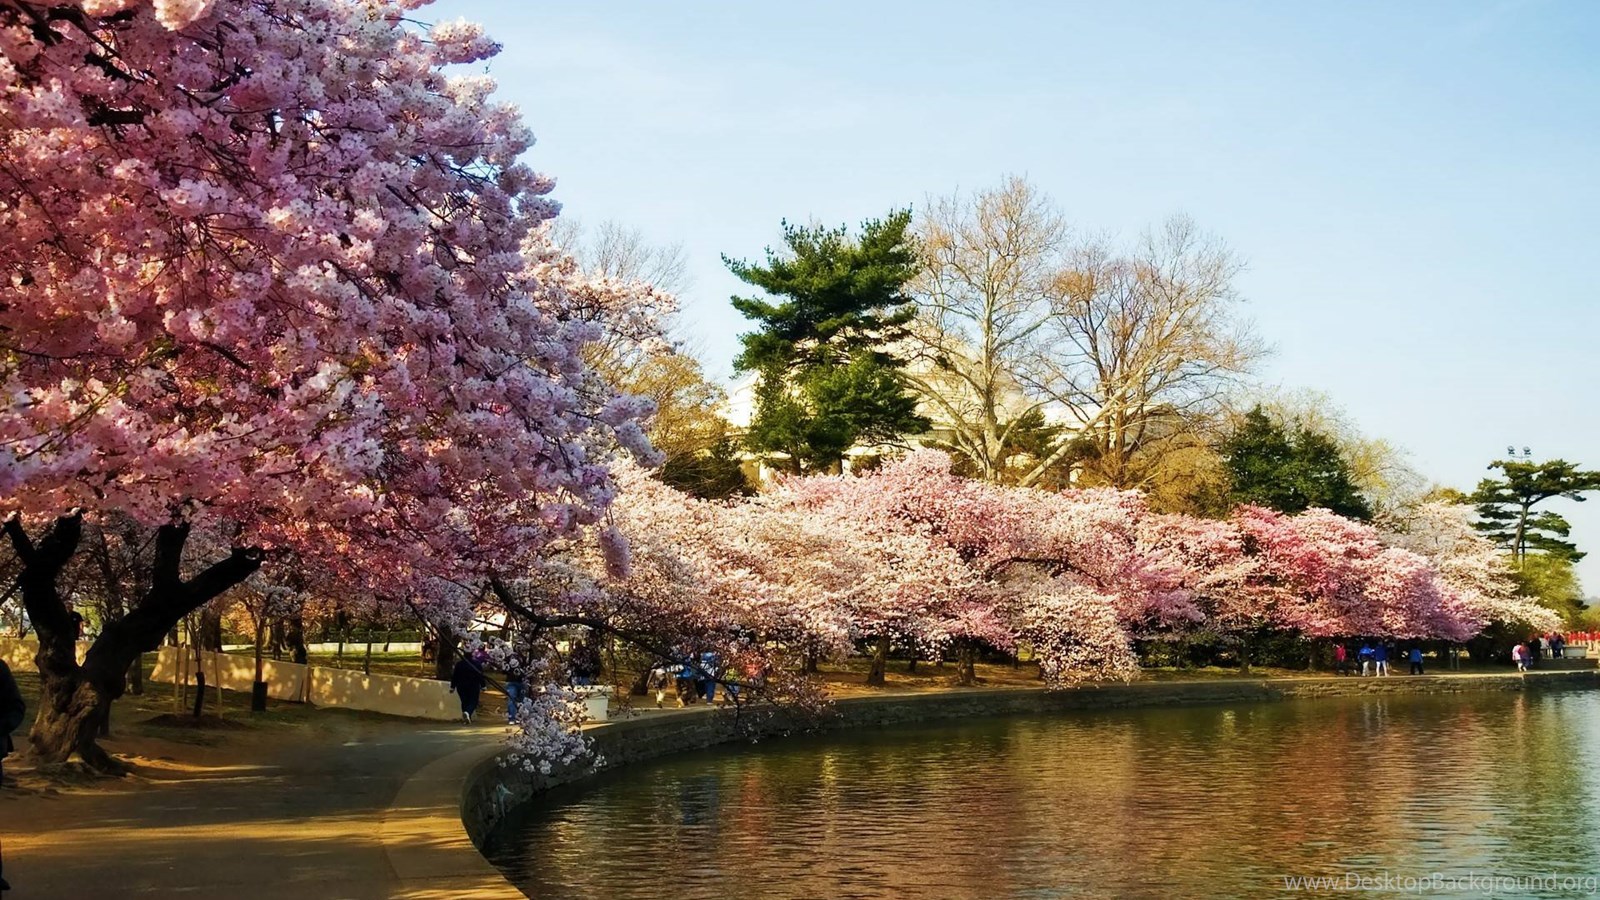 Сакура черри блоссом дерево. Йокогама Япония цветение Сакуры. Ужгород Сакуры цветение Сакуры. Цветение Сакуры в Японии сады. Sakura blossom